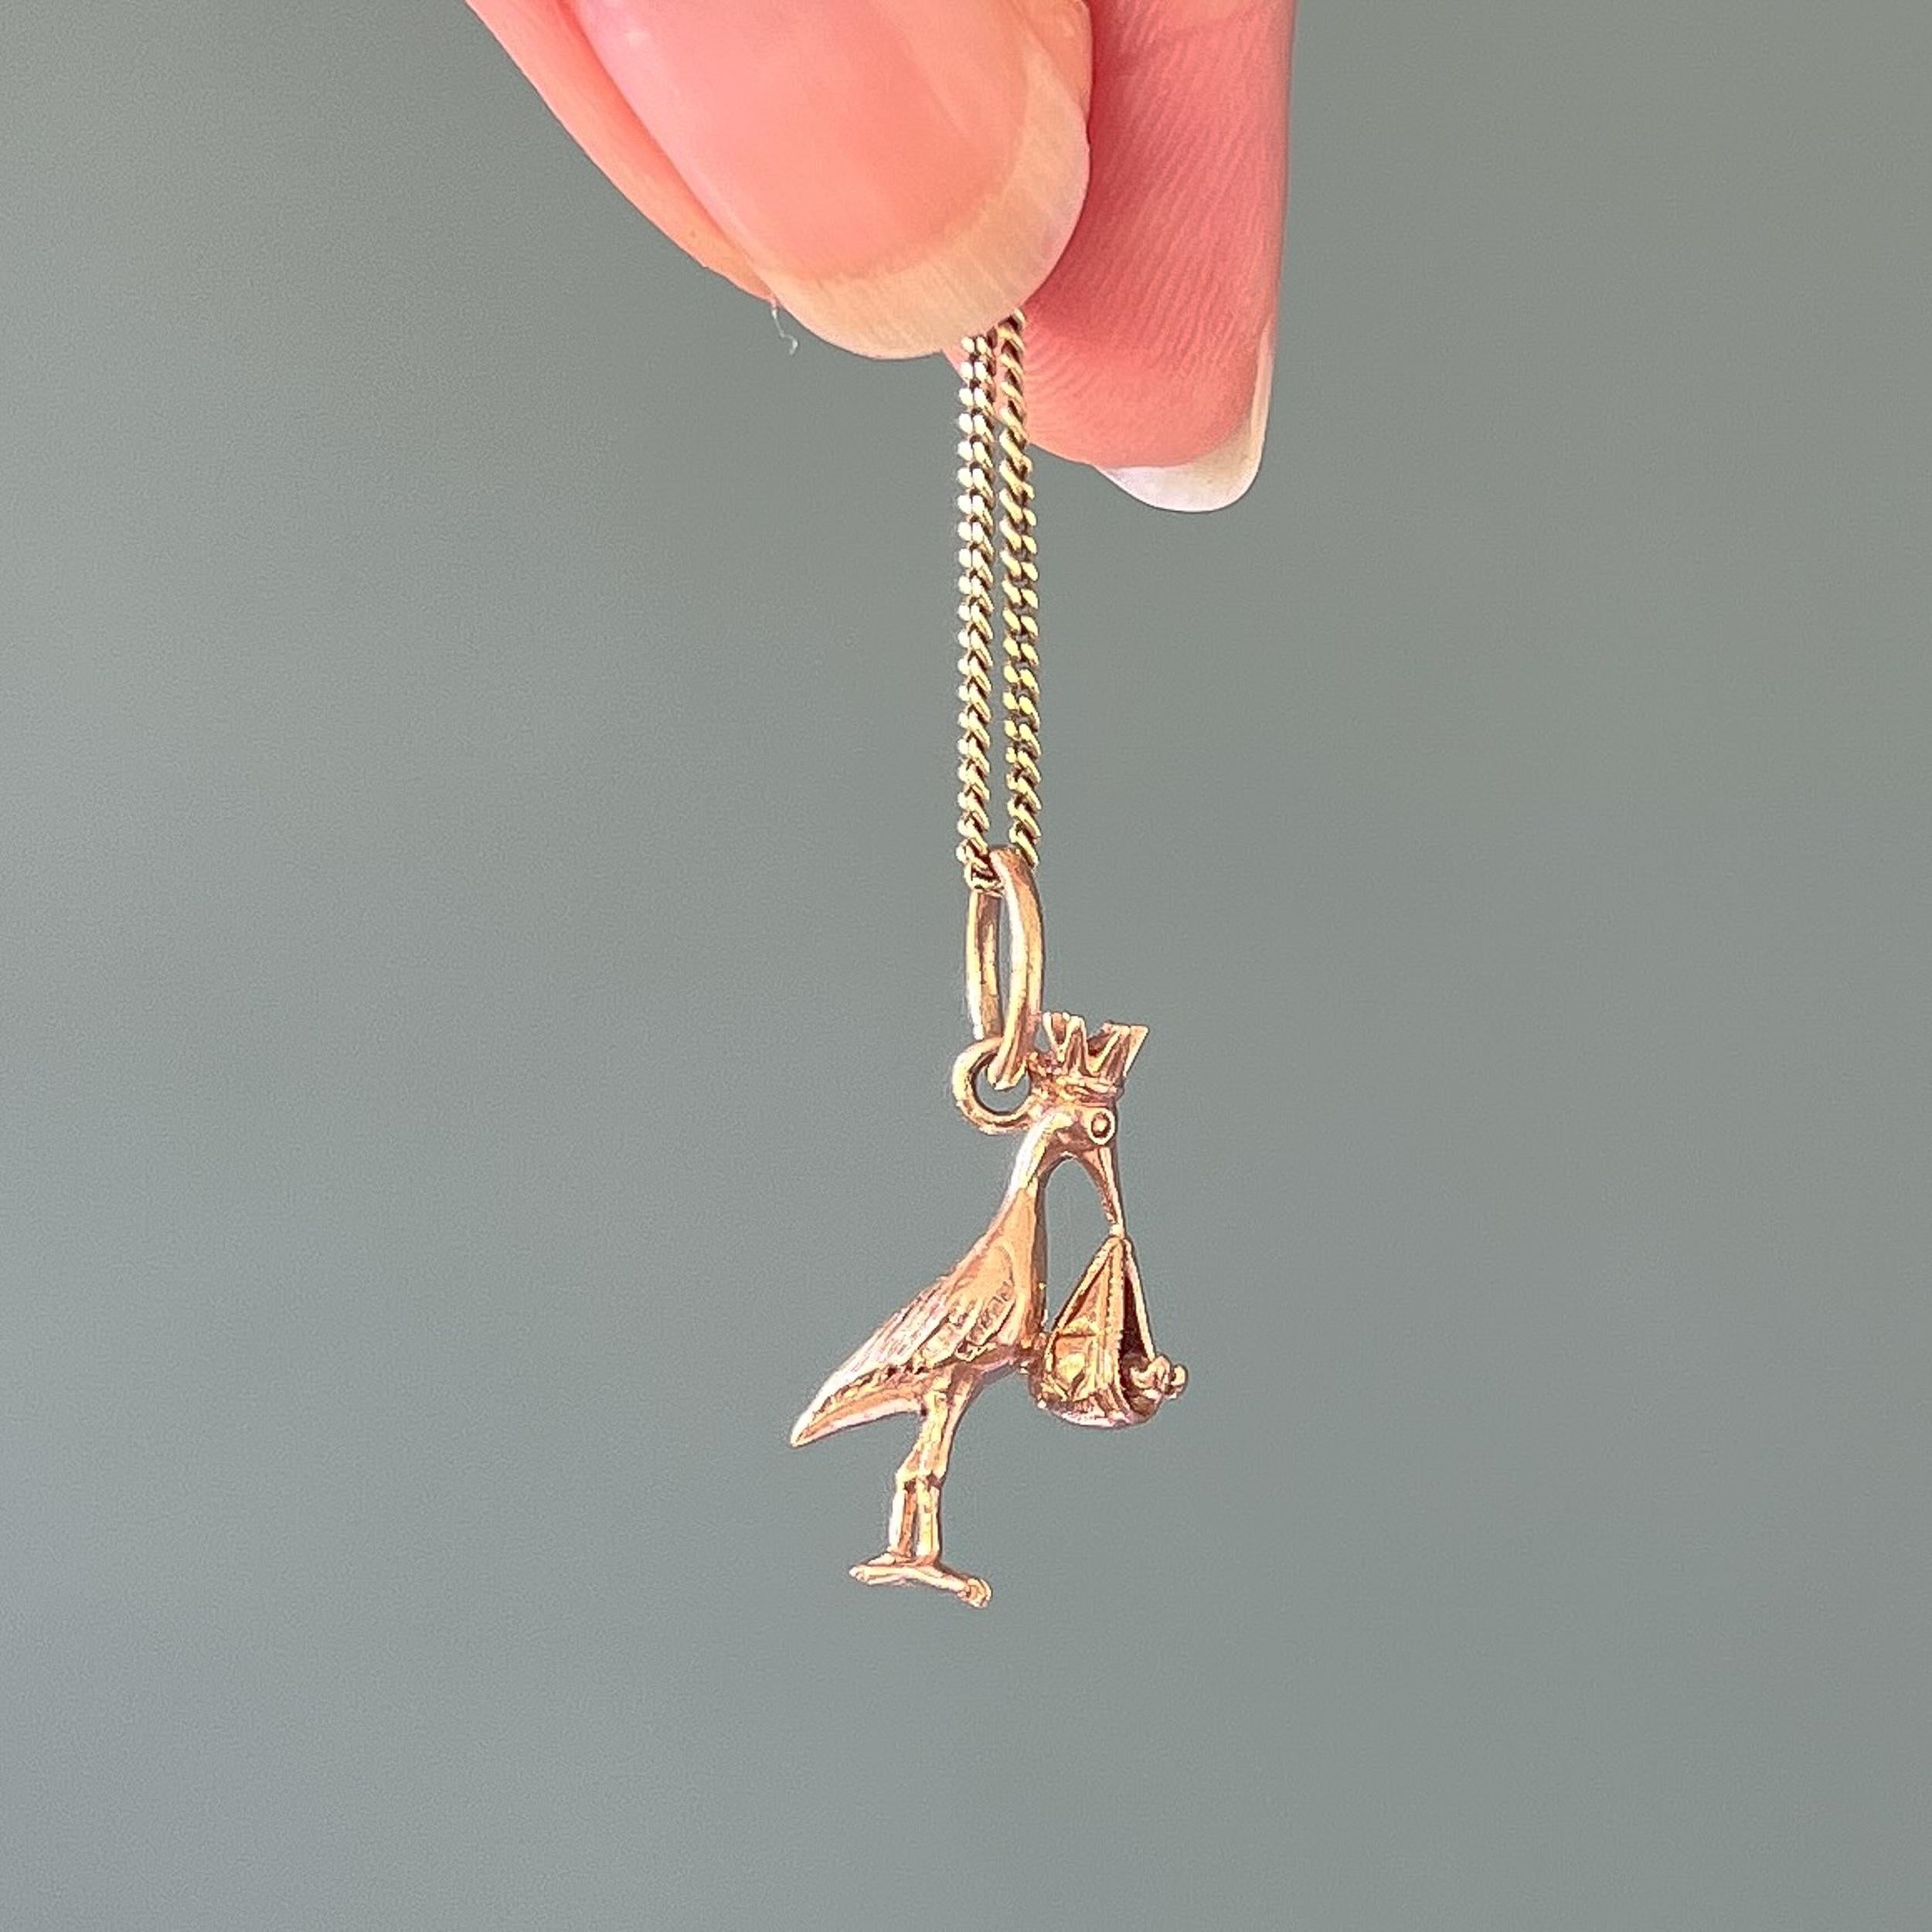 Pendentif vintage en or rose 9 carats représentant une cigogne avec un bébé. La cigogne porte un bébé dans un paquet de tissu suspendu à son bec. La breloque est magnifiquement travaillée avec ses fins détails de la couronne à ses pieds.

Les